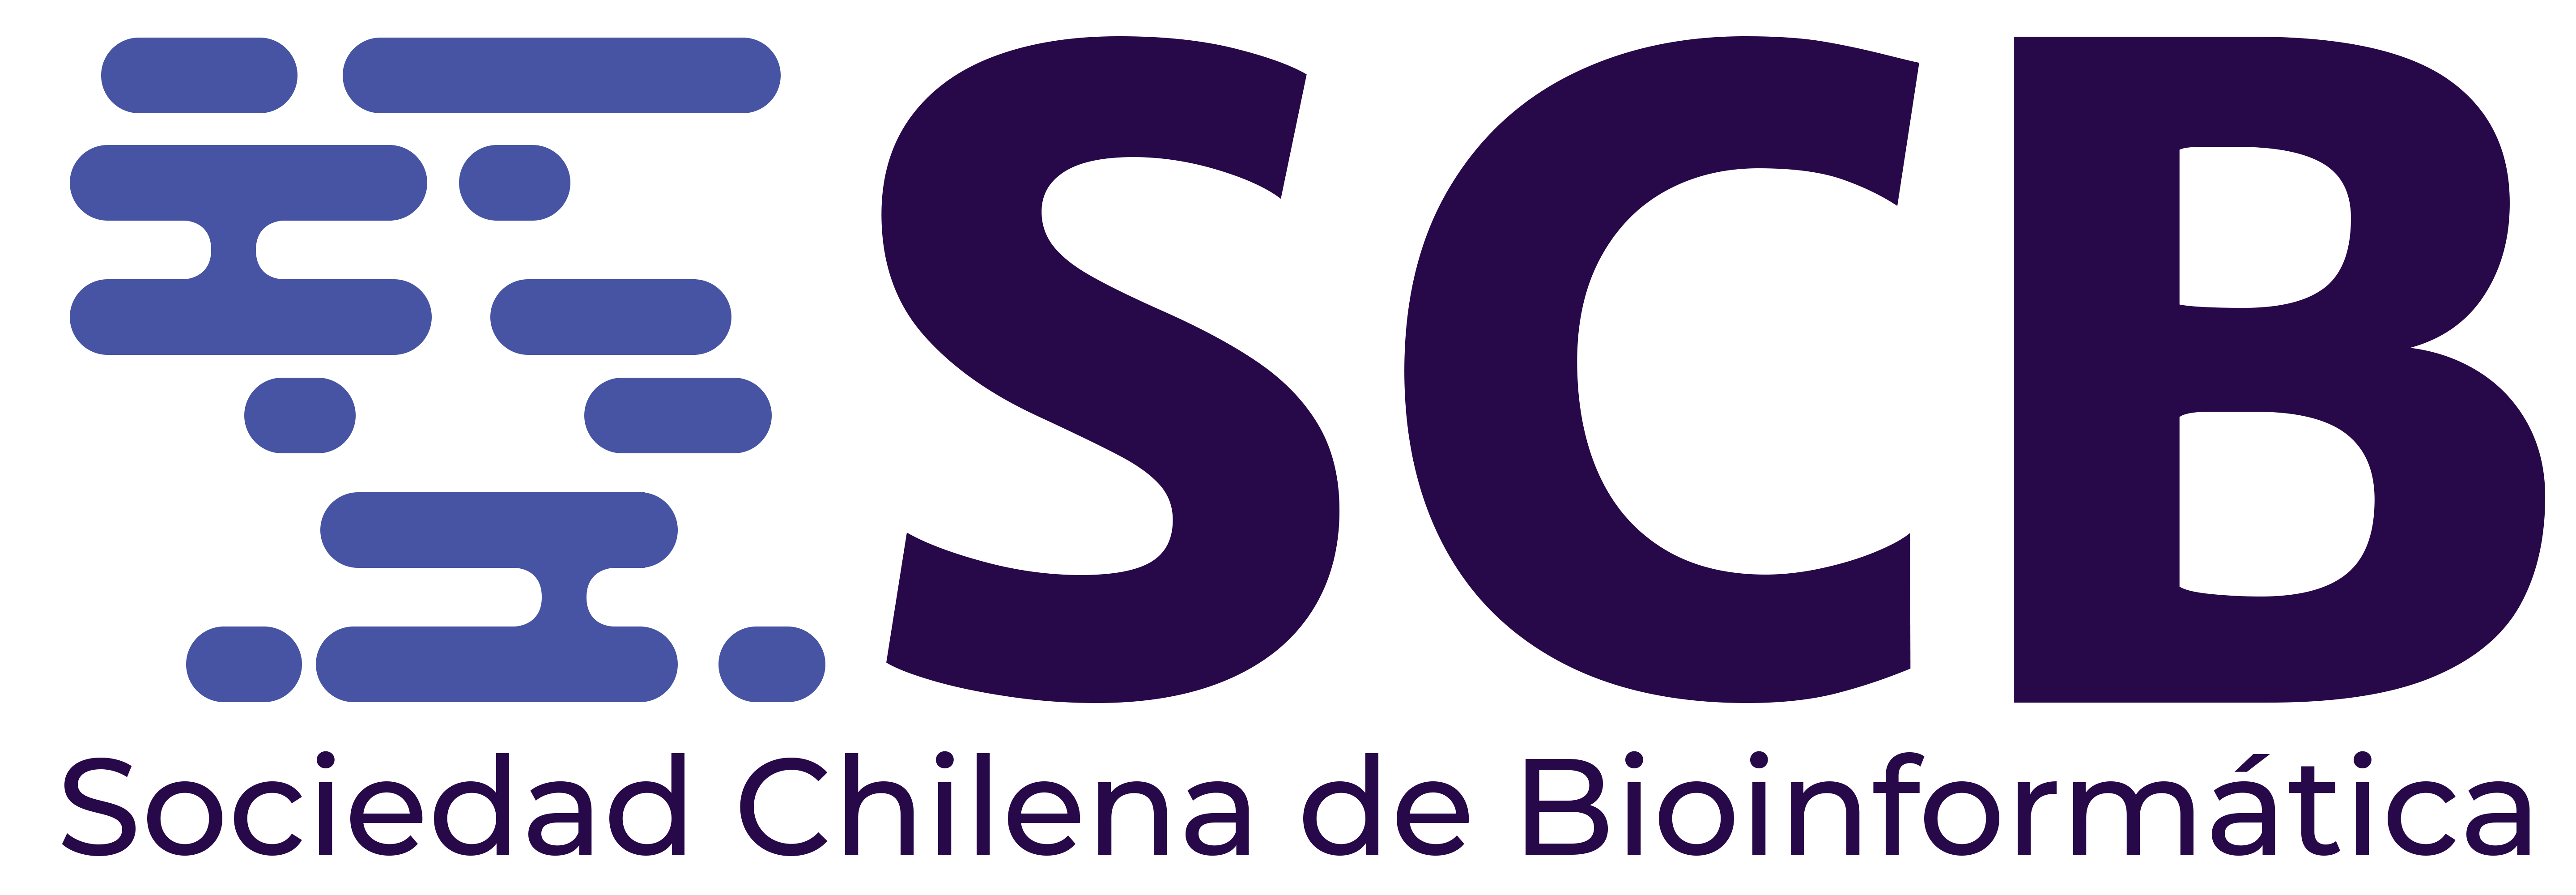 sociedad-chilena